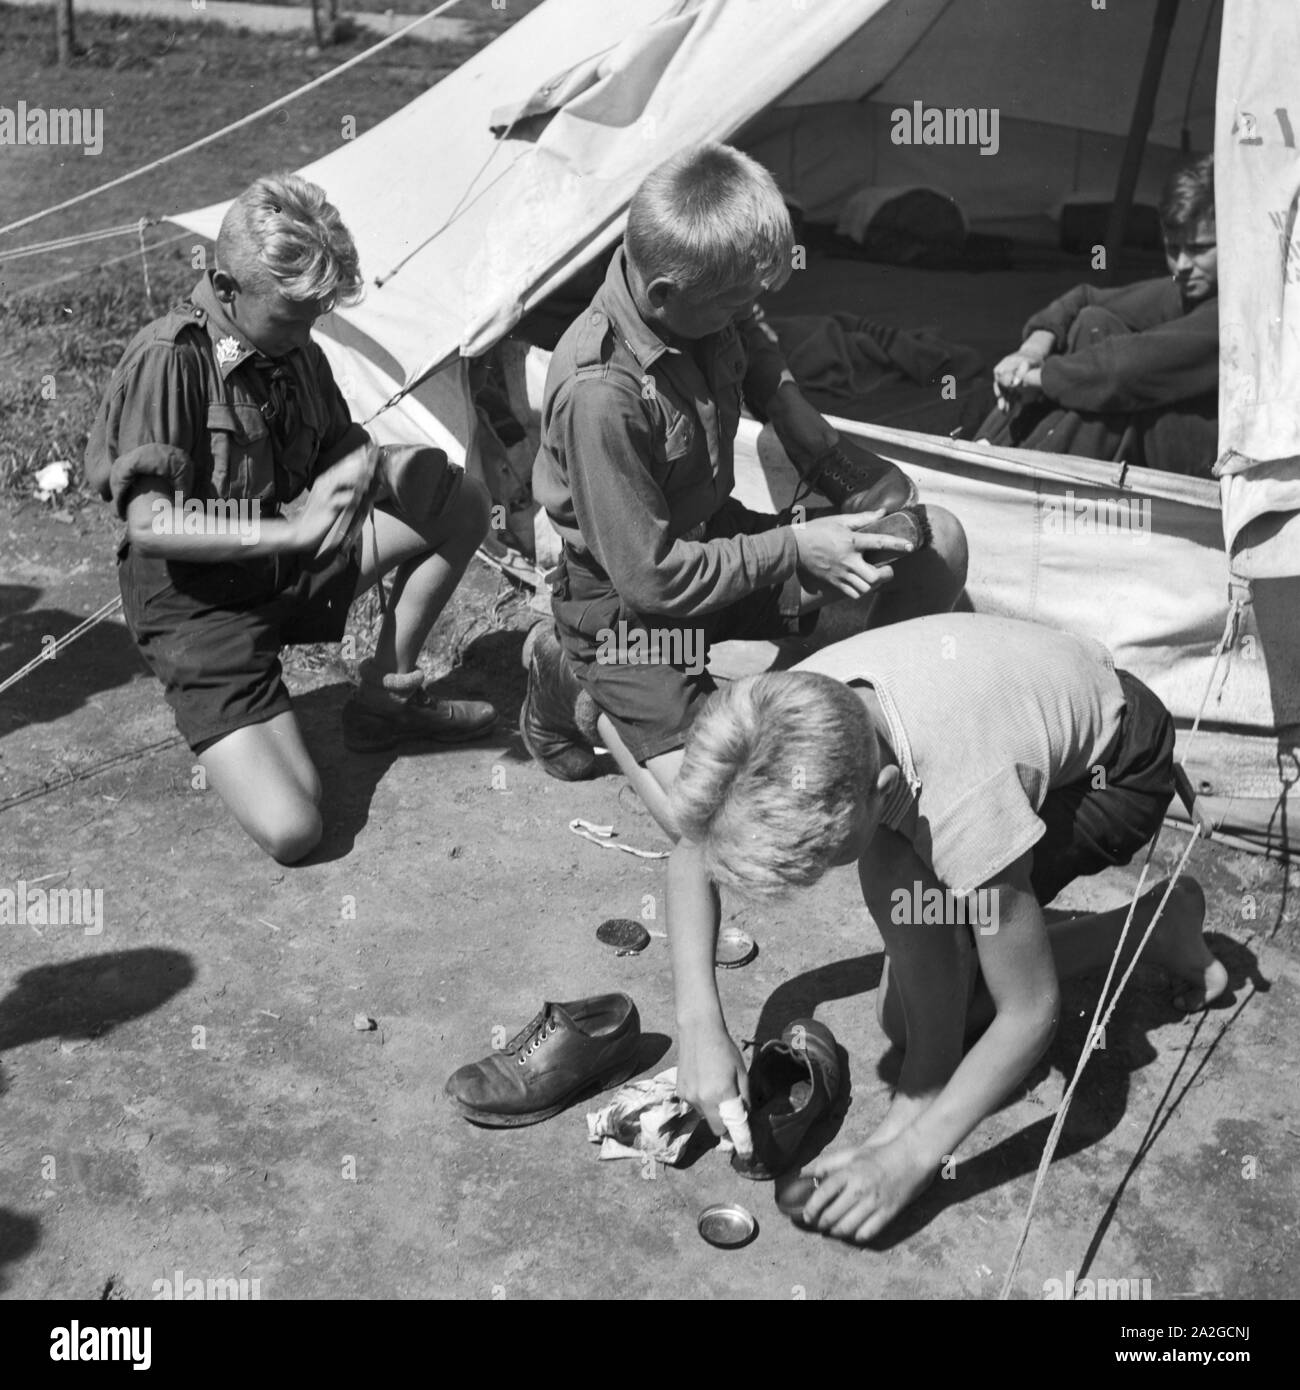 Hitlerjungen beim Schuheputzen im Hitlerjugend Lager, Österreich 1930er Jahre. Hitler youths shining their shoes at the Hitler youth camp, Austria 1930s. Stock Photo